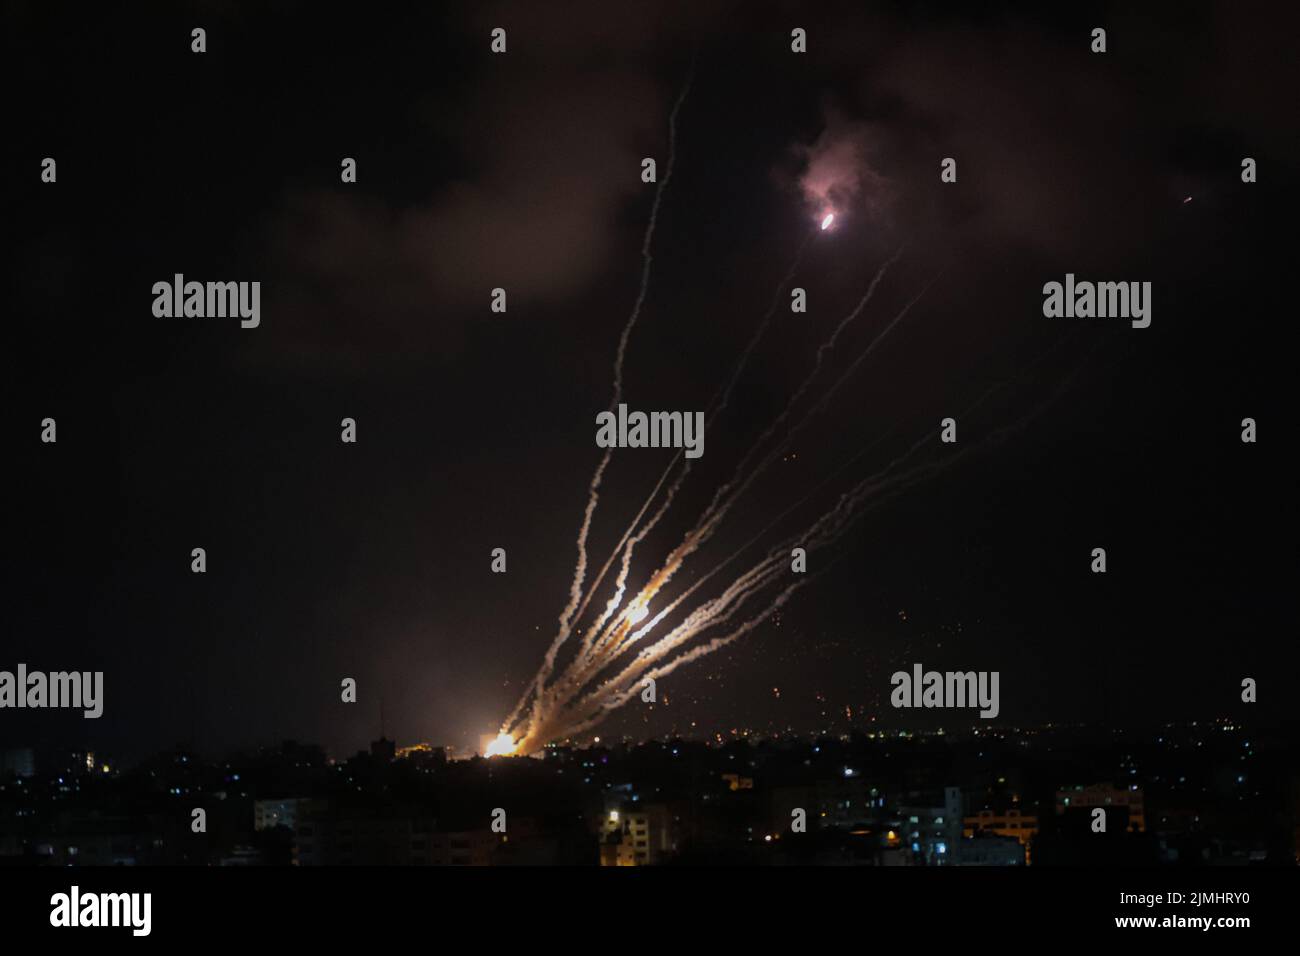 Gaza. 6th de Ago de 2022. Foto tomada en la ciudad de Gaza el 6 de agosto de 2022 muestra cohetes disparados por militantes palestinos hacia Israel. El intercambio de disparos entre Israel y la Yihad Islámica Palestina (PIJ) continuó durante el segundo día del sábado, dejando al menos 15 muertos y 125 heridos en la Faja de Gaza. Crédito: Rizek Abdeljawad/Xinhua/Alamy Live News Foto de stock